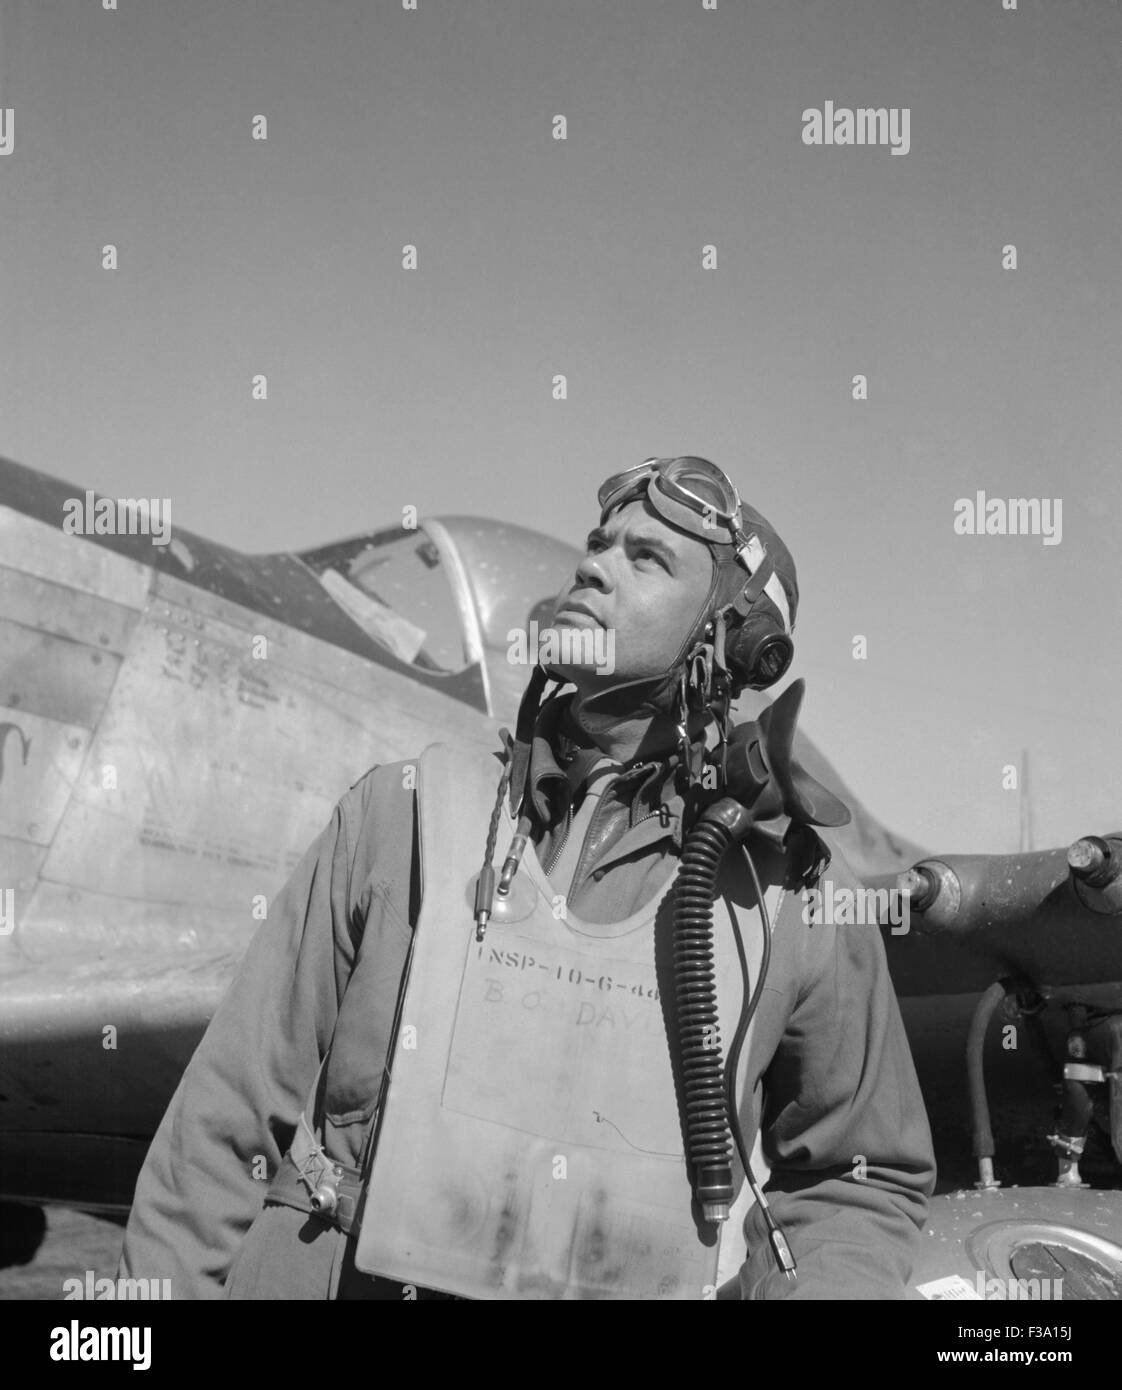 Benjamin generale O. Davis Jr, comandante degli aviatori di Tuskegee durante la Seconda Guerra Mondiale e il primo americano africano in generale Foto Stock